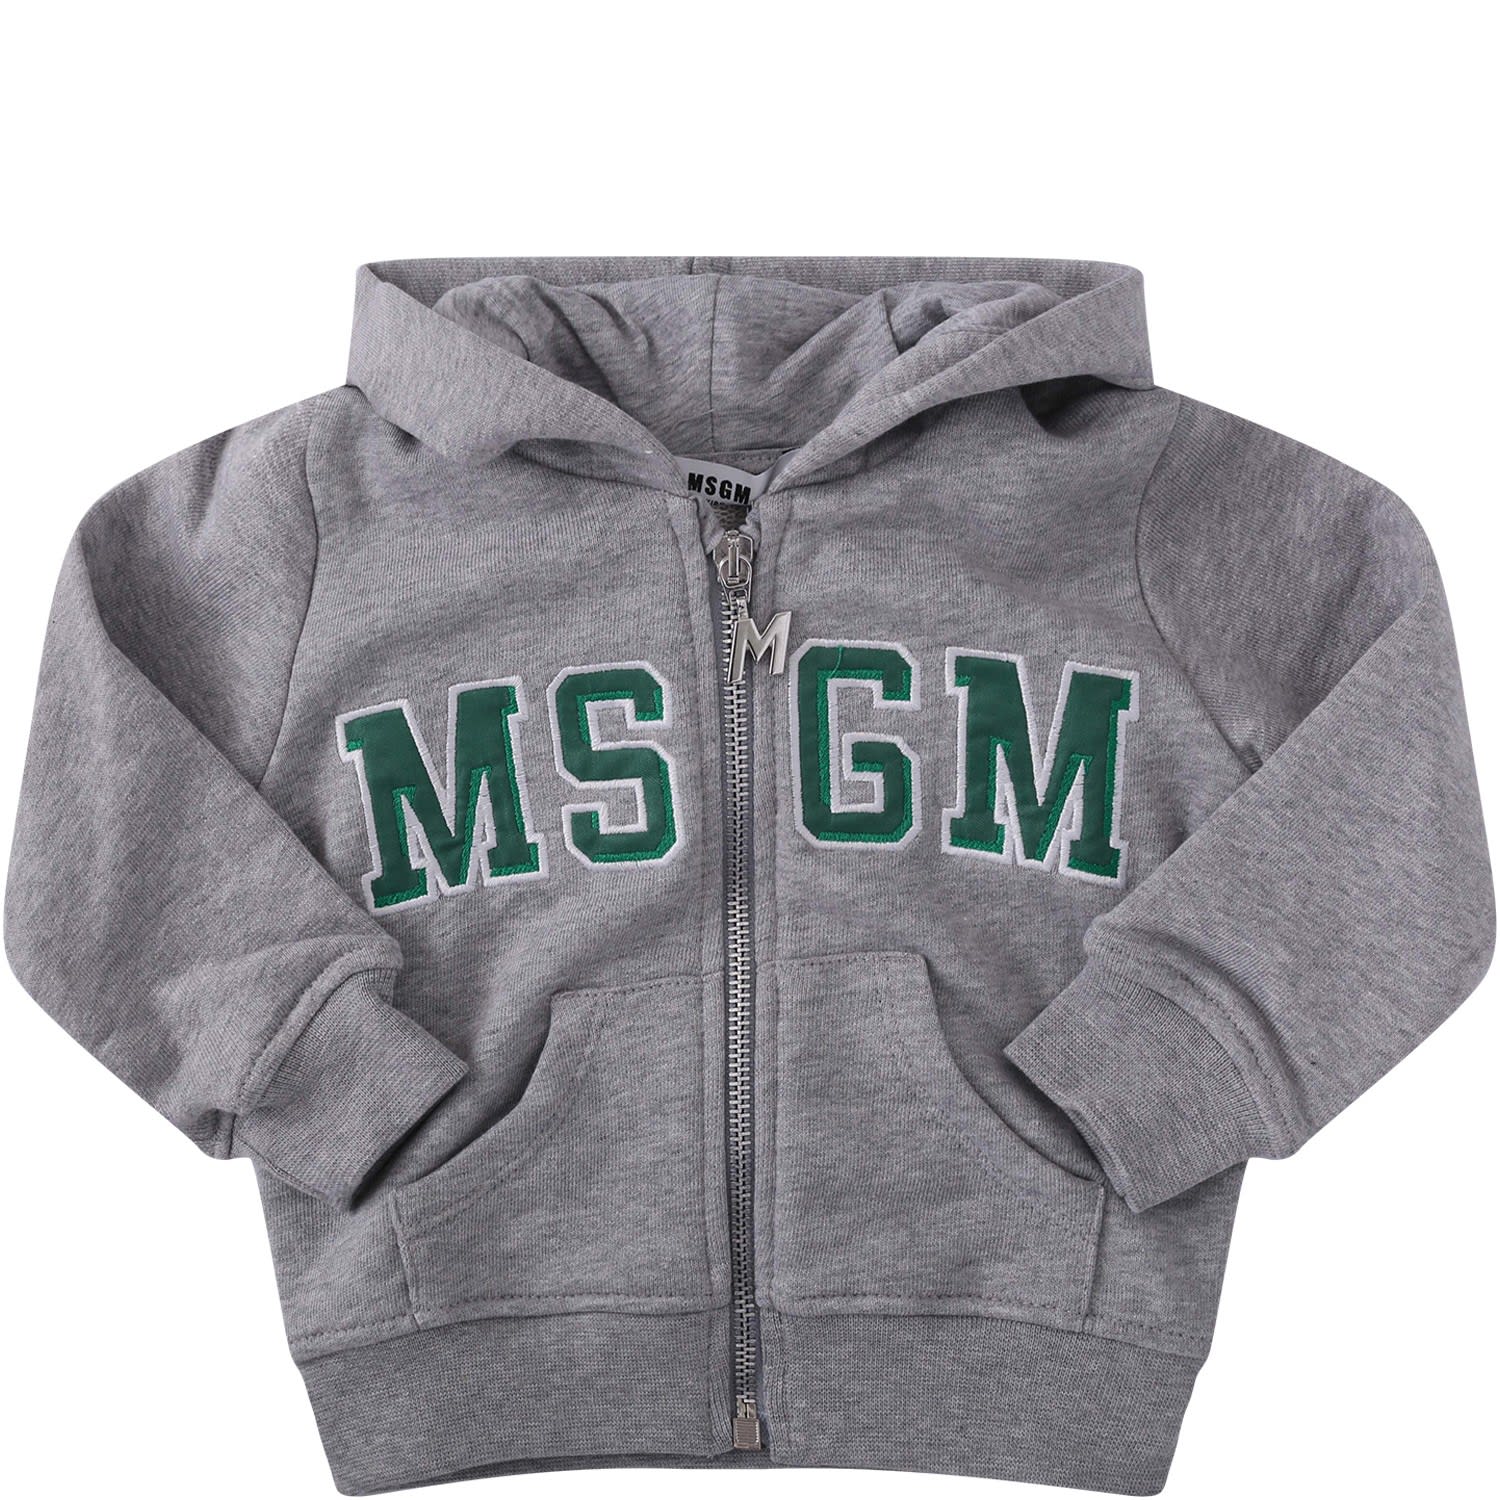 MSGM Grey Babyboy Sweatshirt With Green Logo